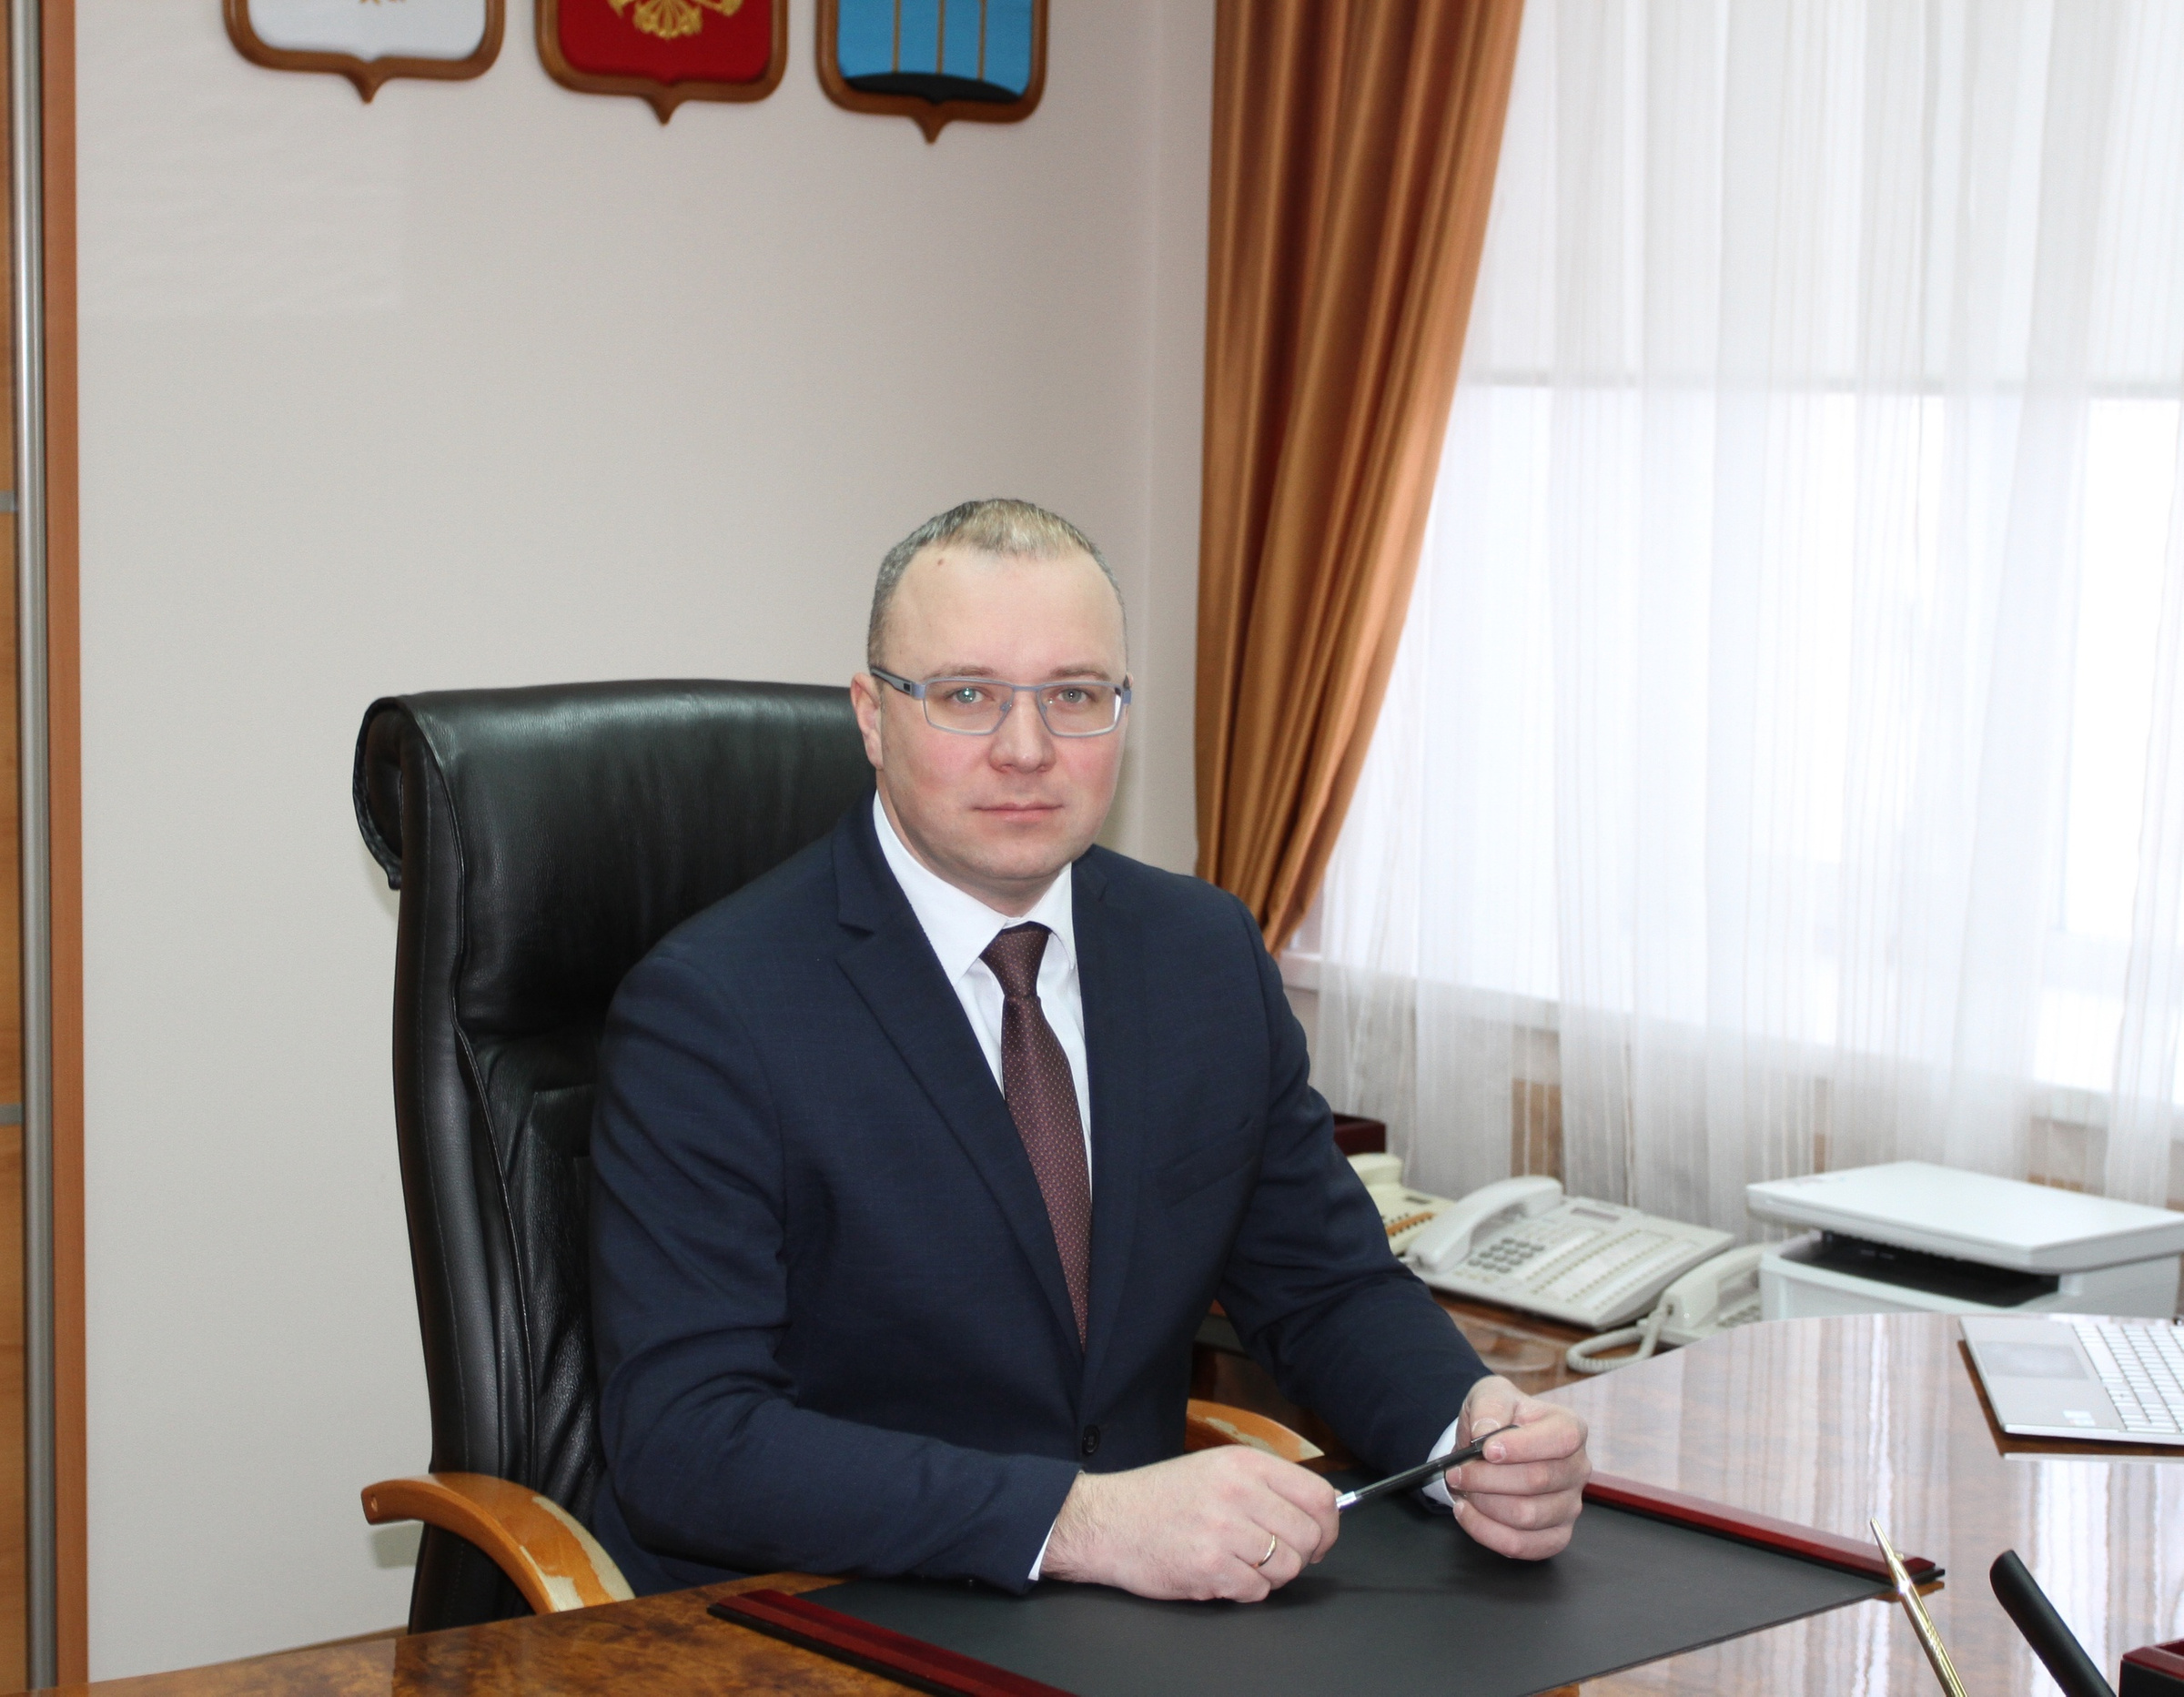 Теперь уже бывший мэр Димитровграда Андрей Большаков. Фото © VK / Андрей Большаков